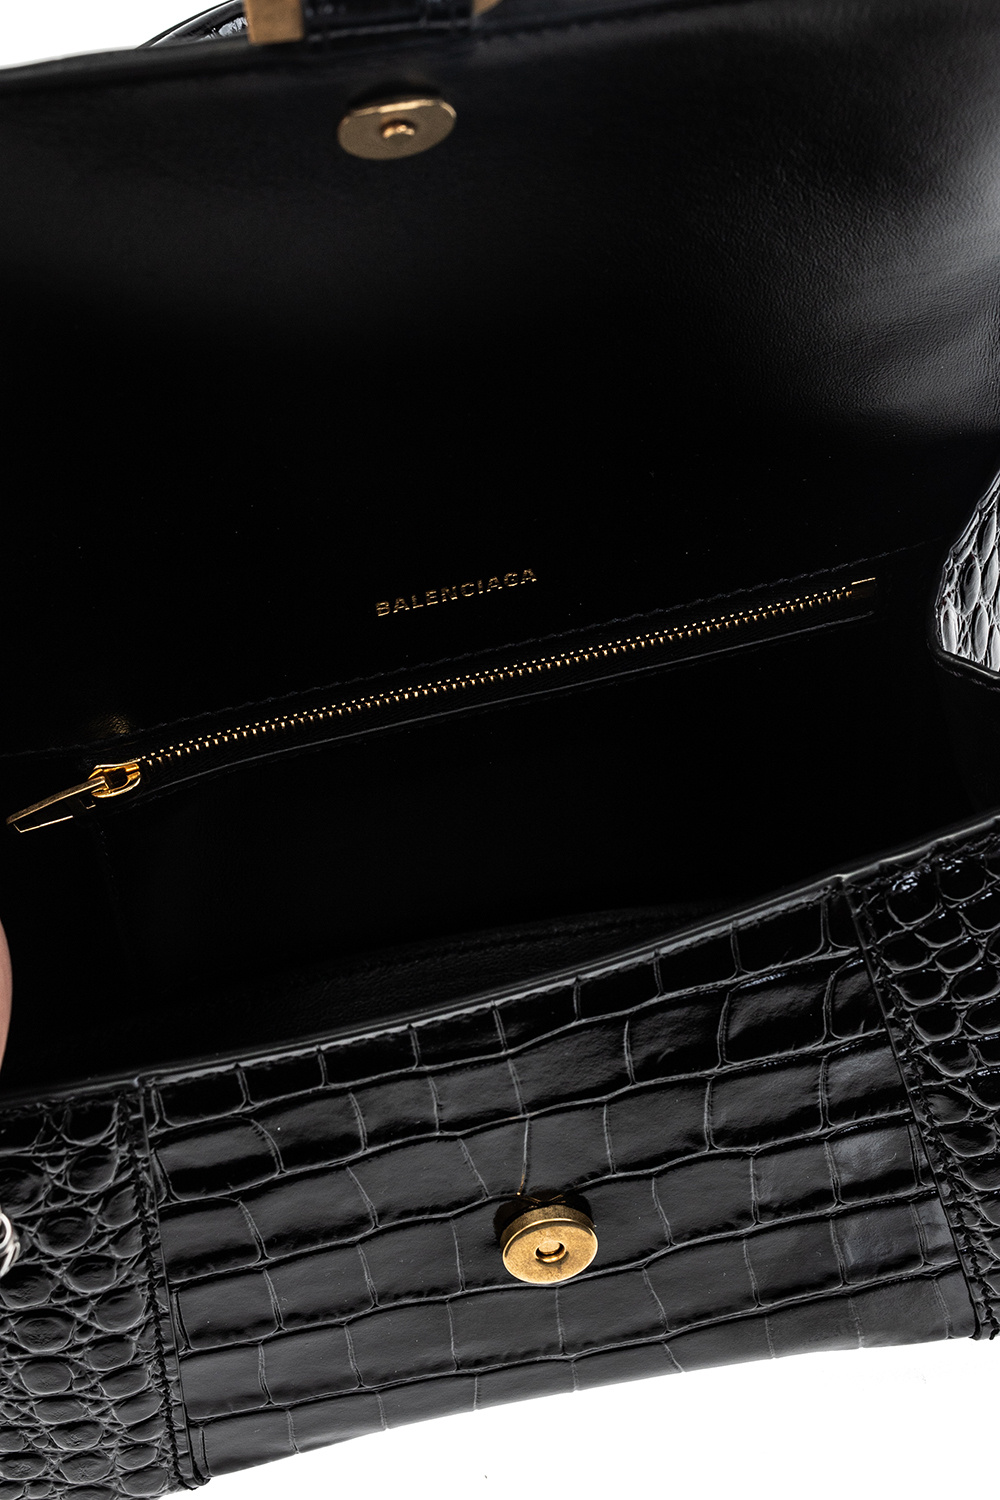 Louis Vuitton Ellipse PM Bag - Vitkac shop online